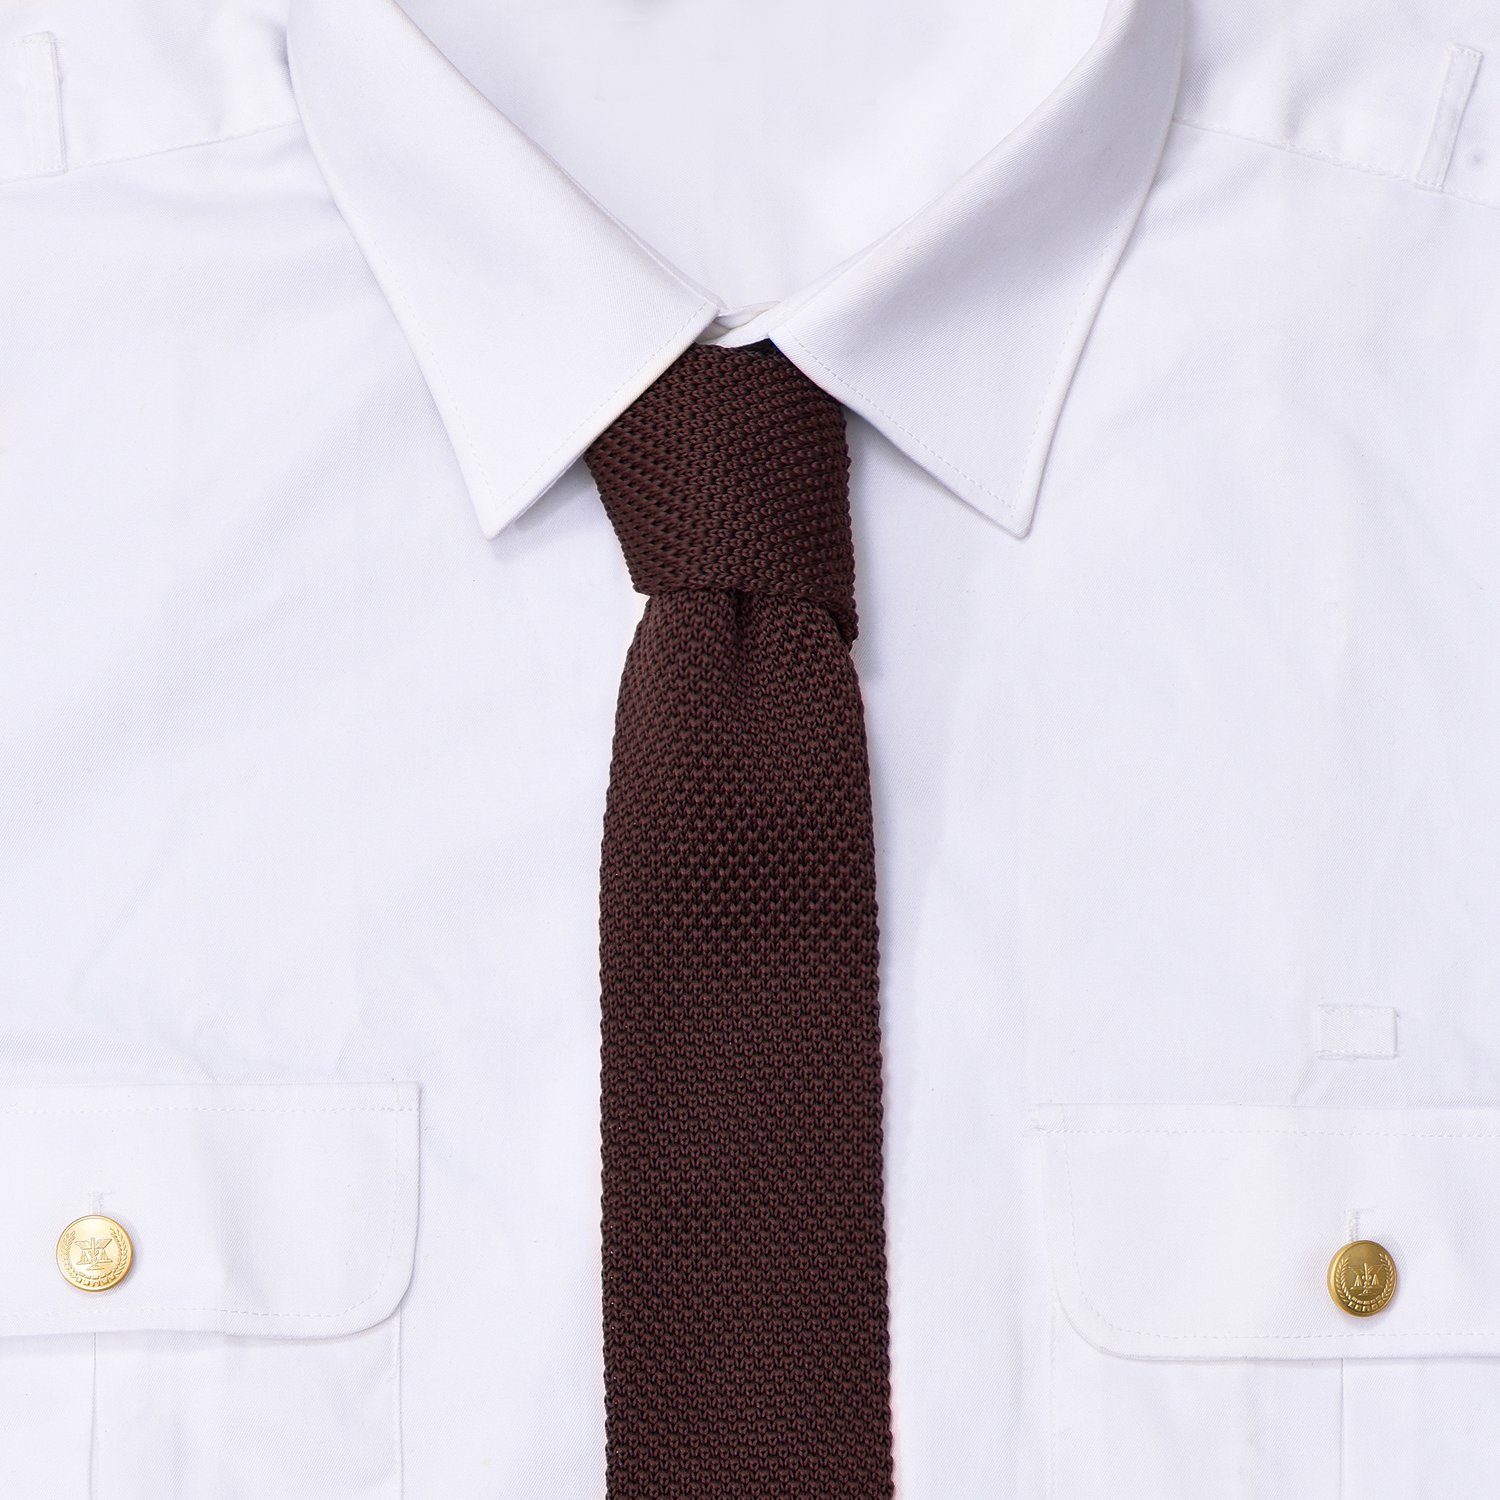 DonDon Krawatte schmale Krawatte 5 (Packung, für Büro festliche braun cm Veranstaltungen oder 1-St) Strickkrawatte, Wollkrawatte Retro-Look